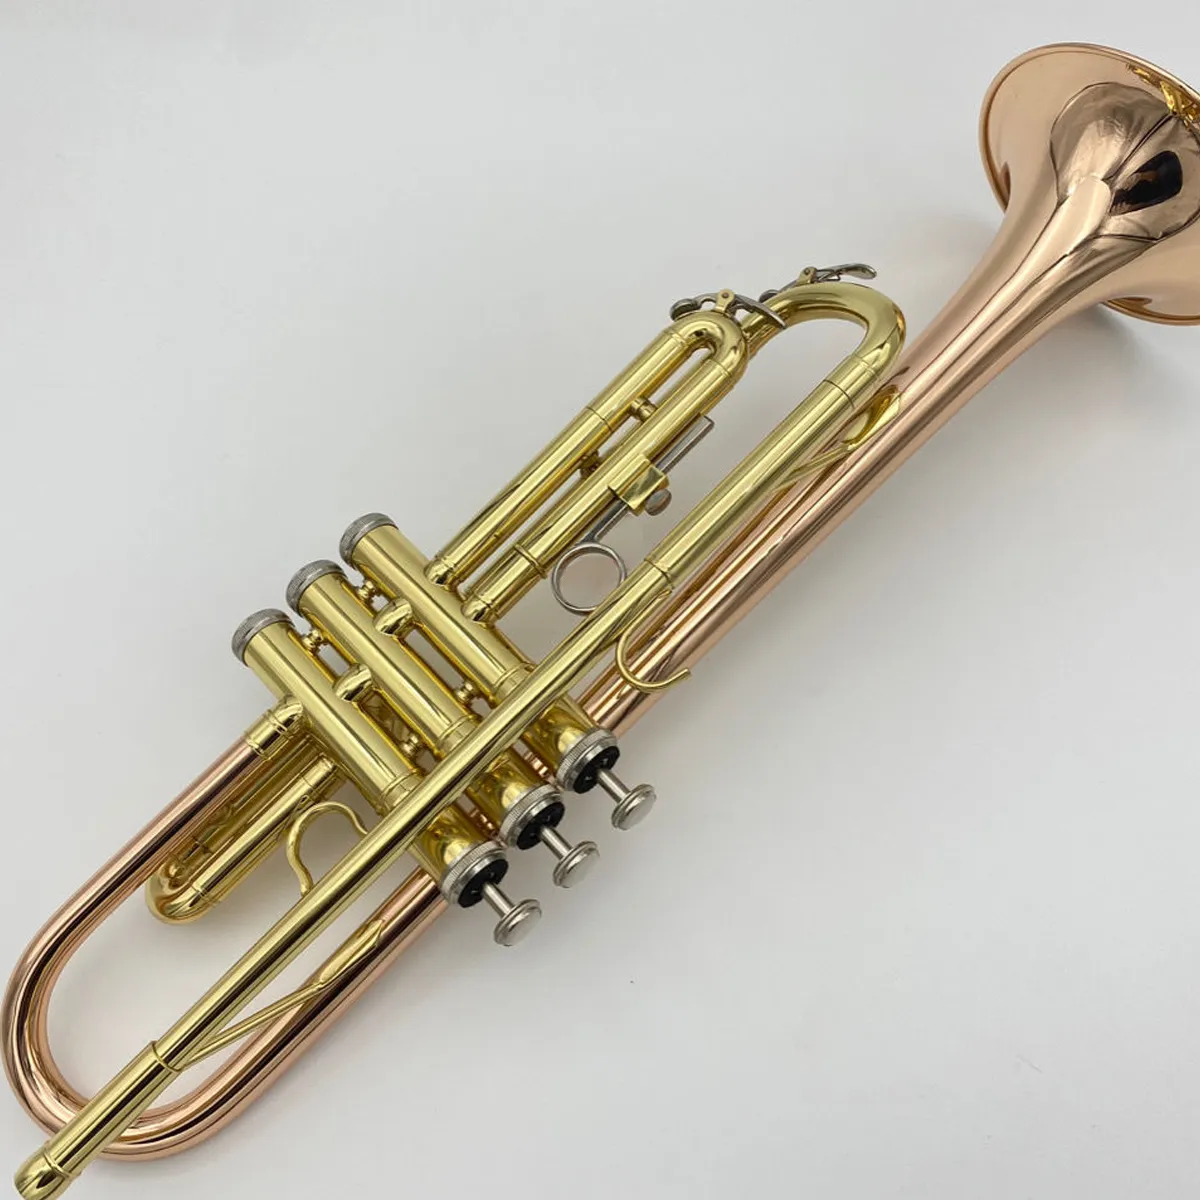 初心者向けの高品質のプロフェッショナルトランペット楽器をプレイするためのゴールドプレートリンブロンズリバースグリップレフタントランペット8985323